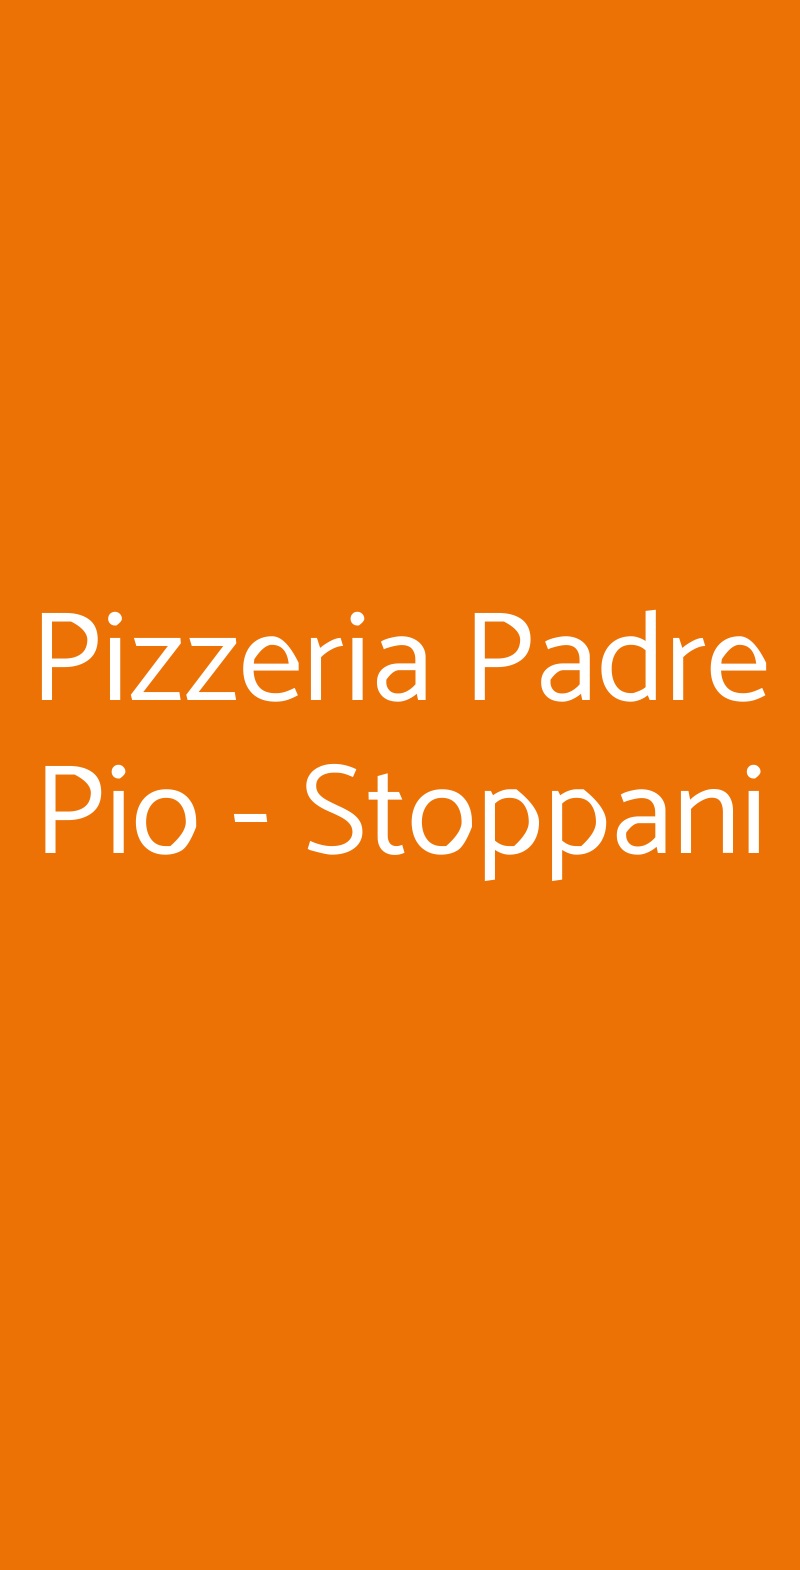 Pizzeria Padre Pio - Stoppani Milano menù 1 pagina